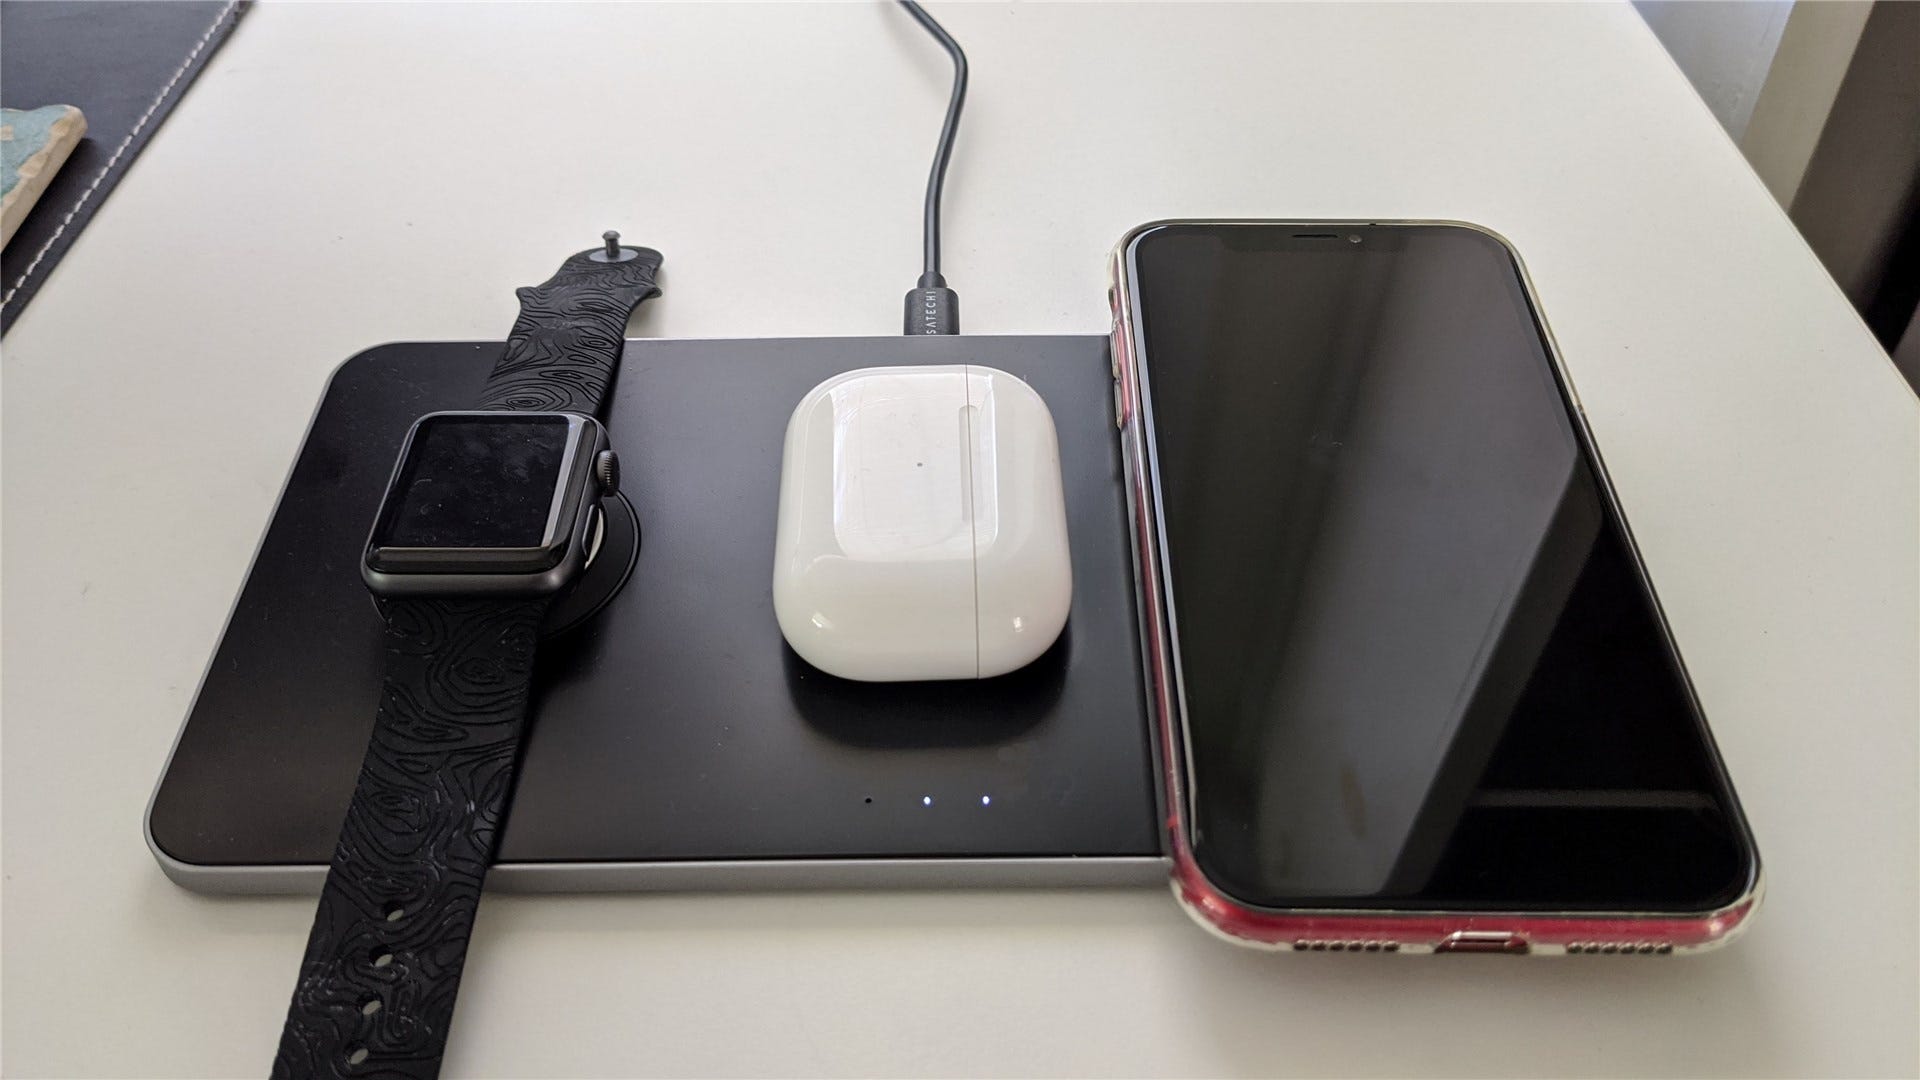 Thảm Trio sạc an Apple Watch, AirPods Pro và iPhone XR cùng một lúc